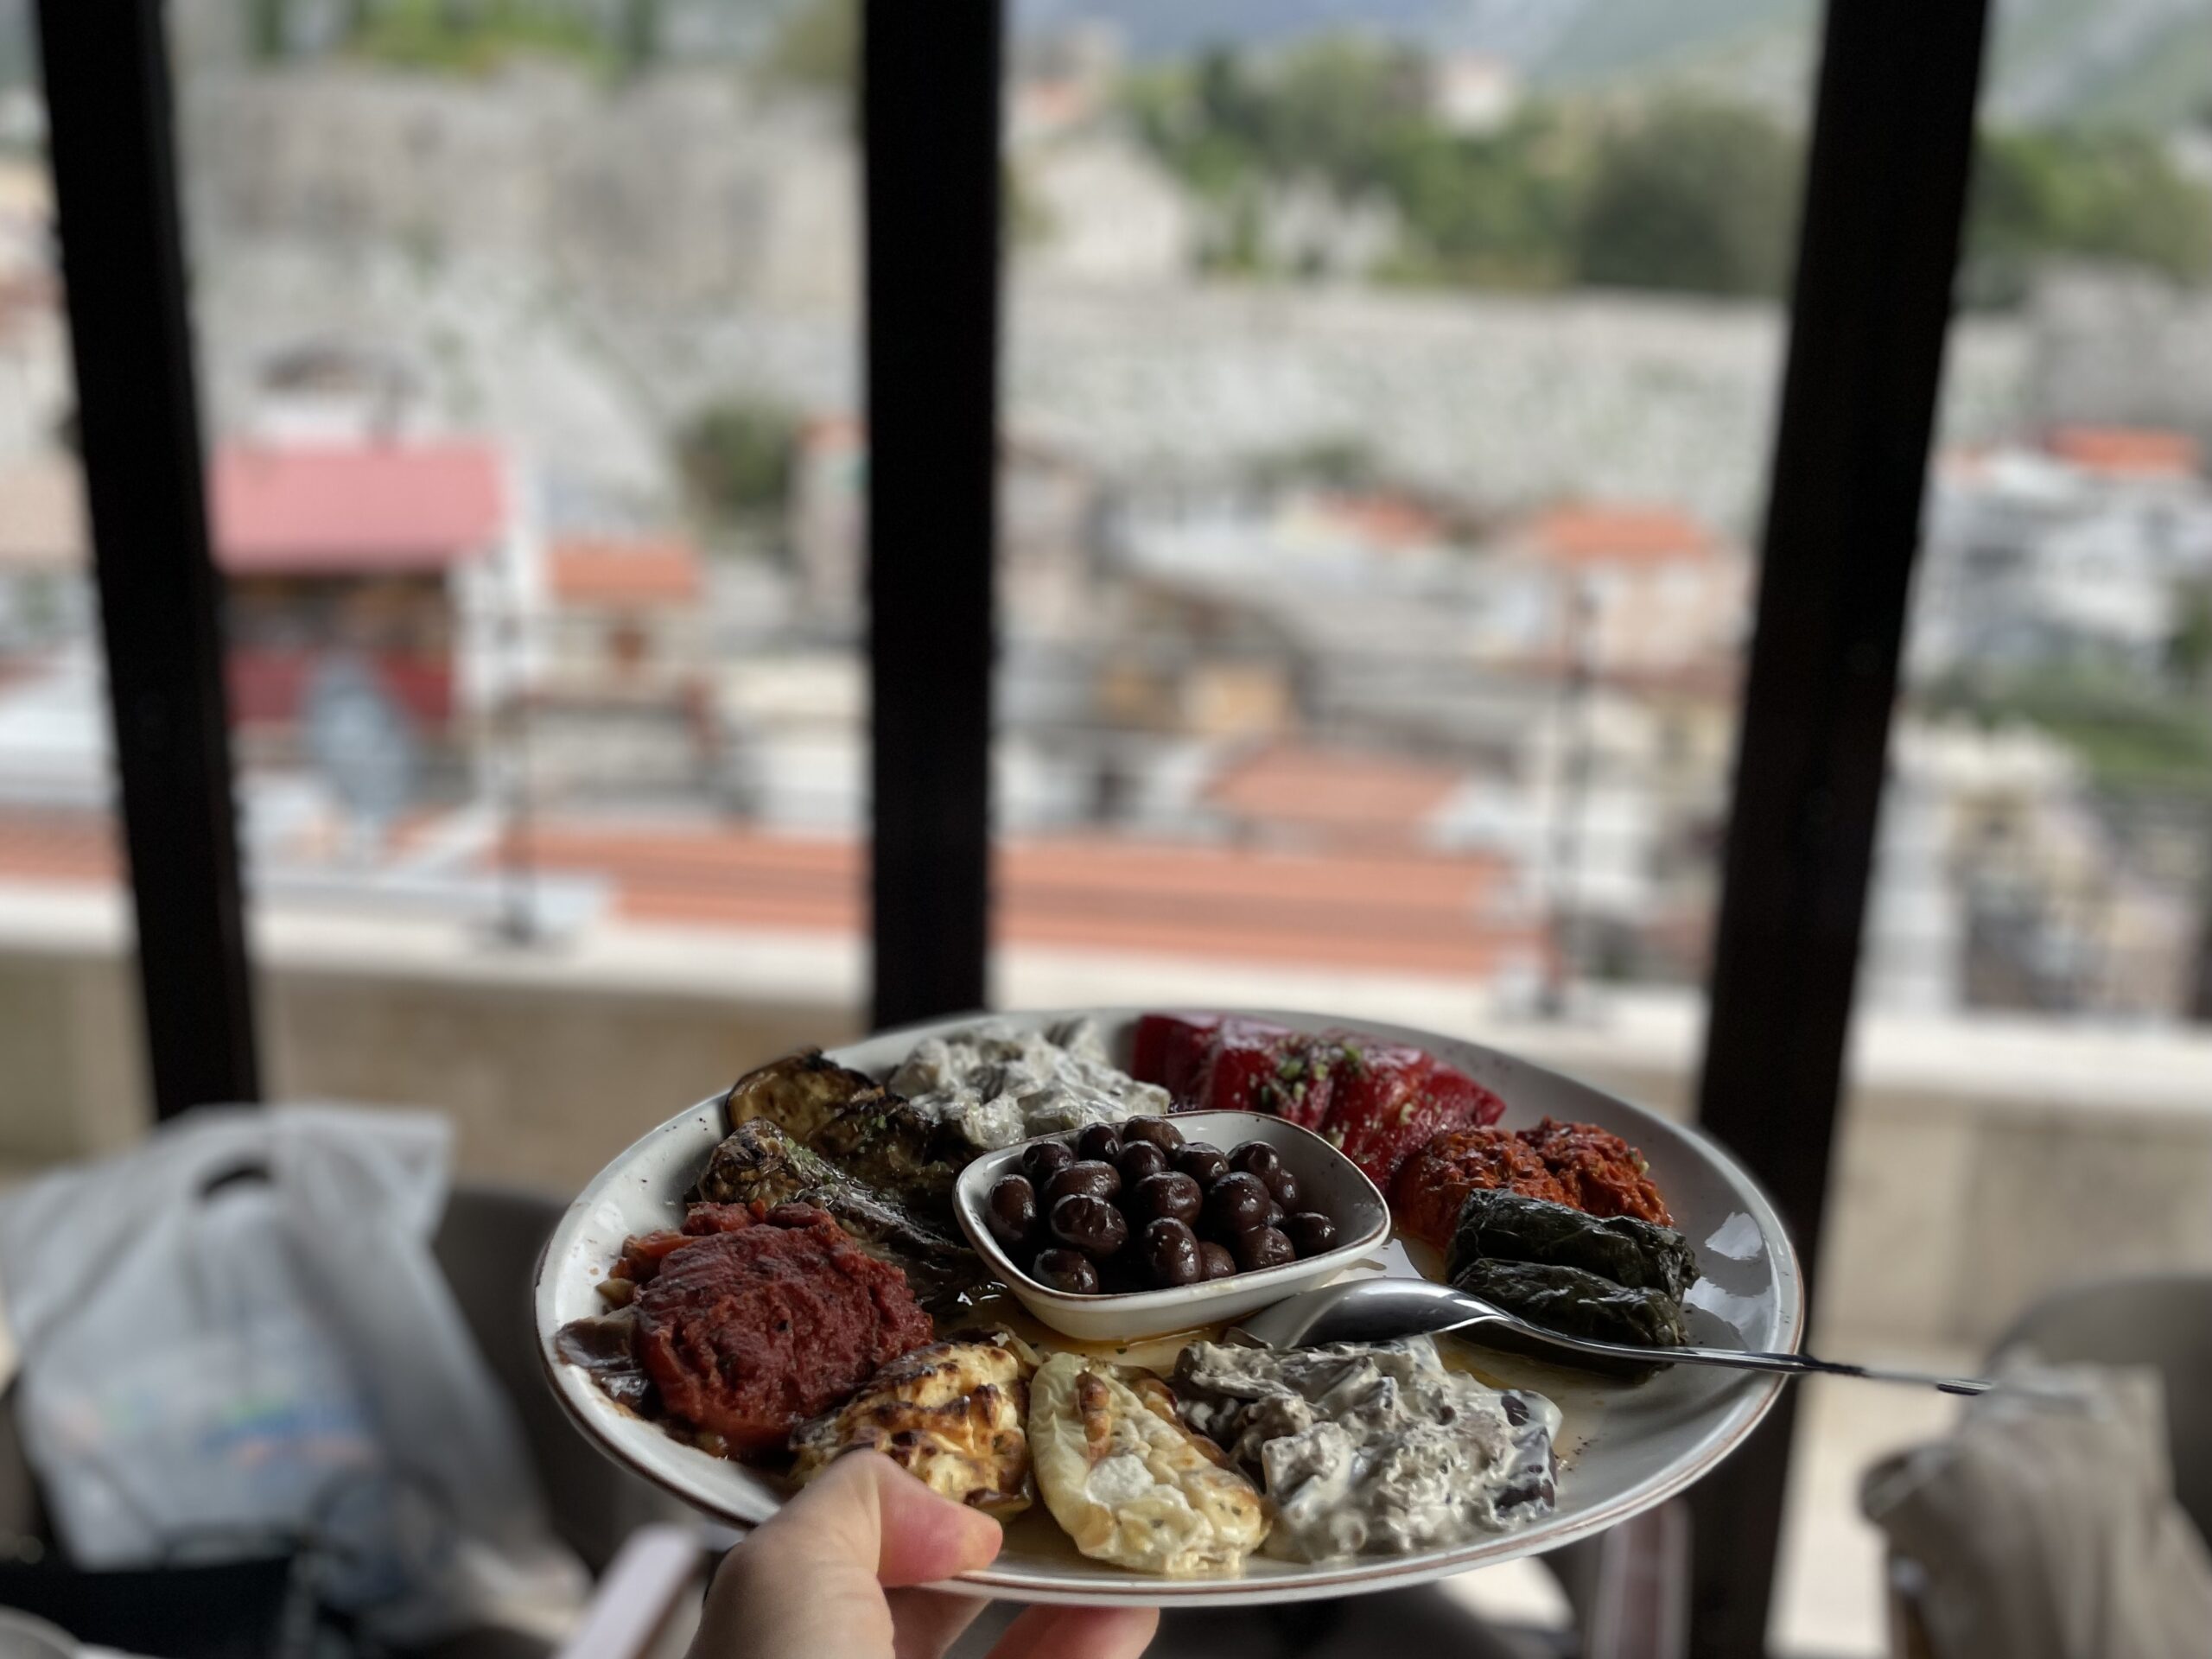 Czarnogórska kuchnia czerpie inspiracje z innych bałkańskich regionów oraz z Imperium Osmańskiego